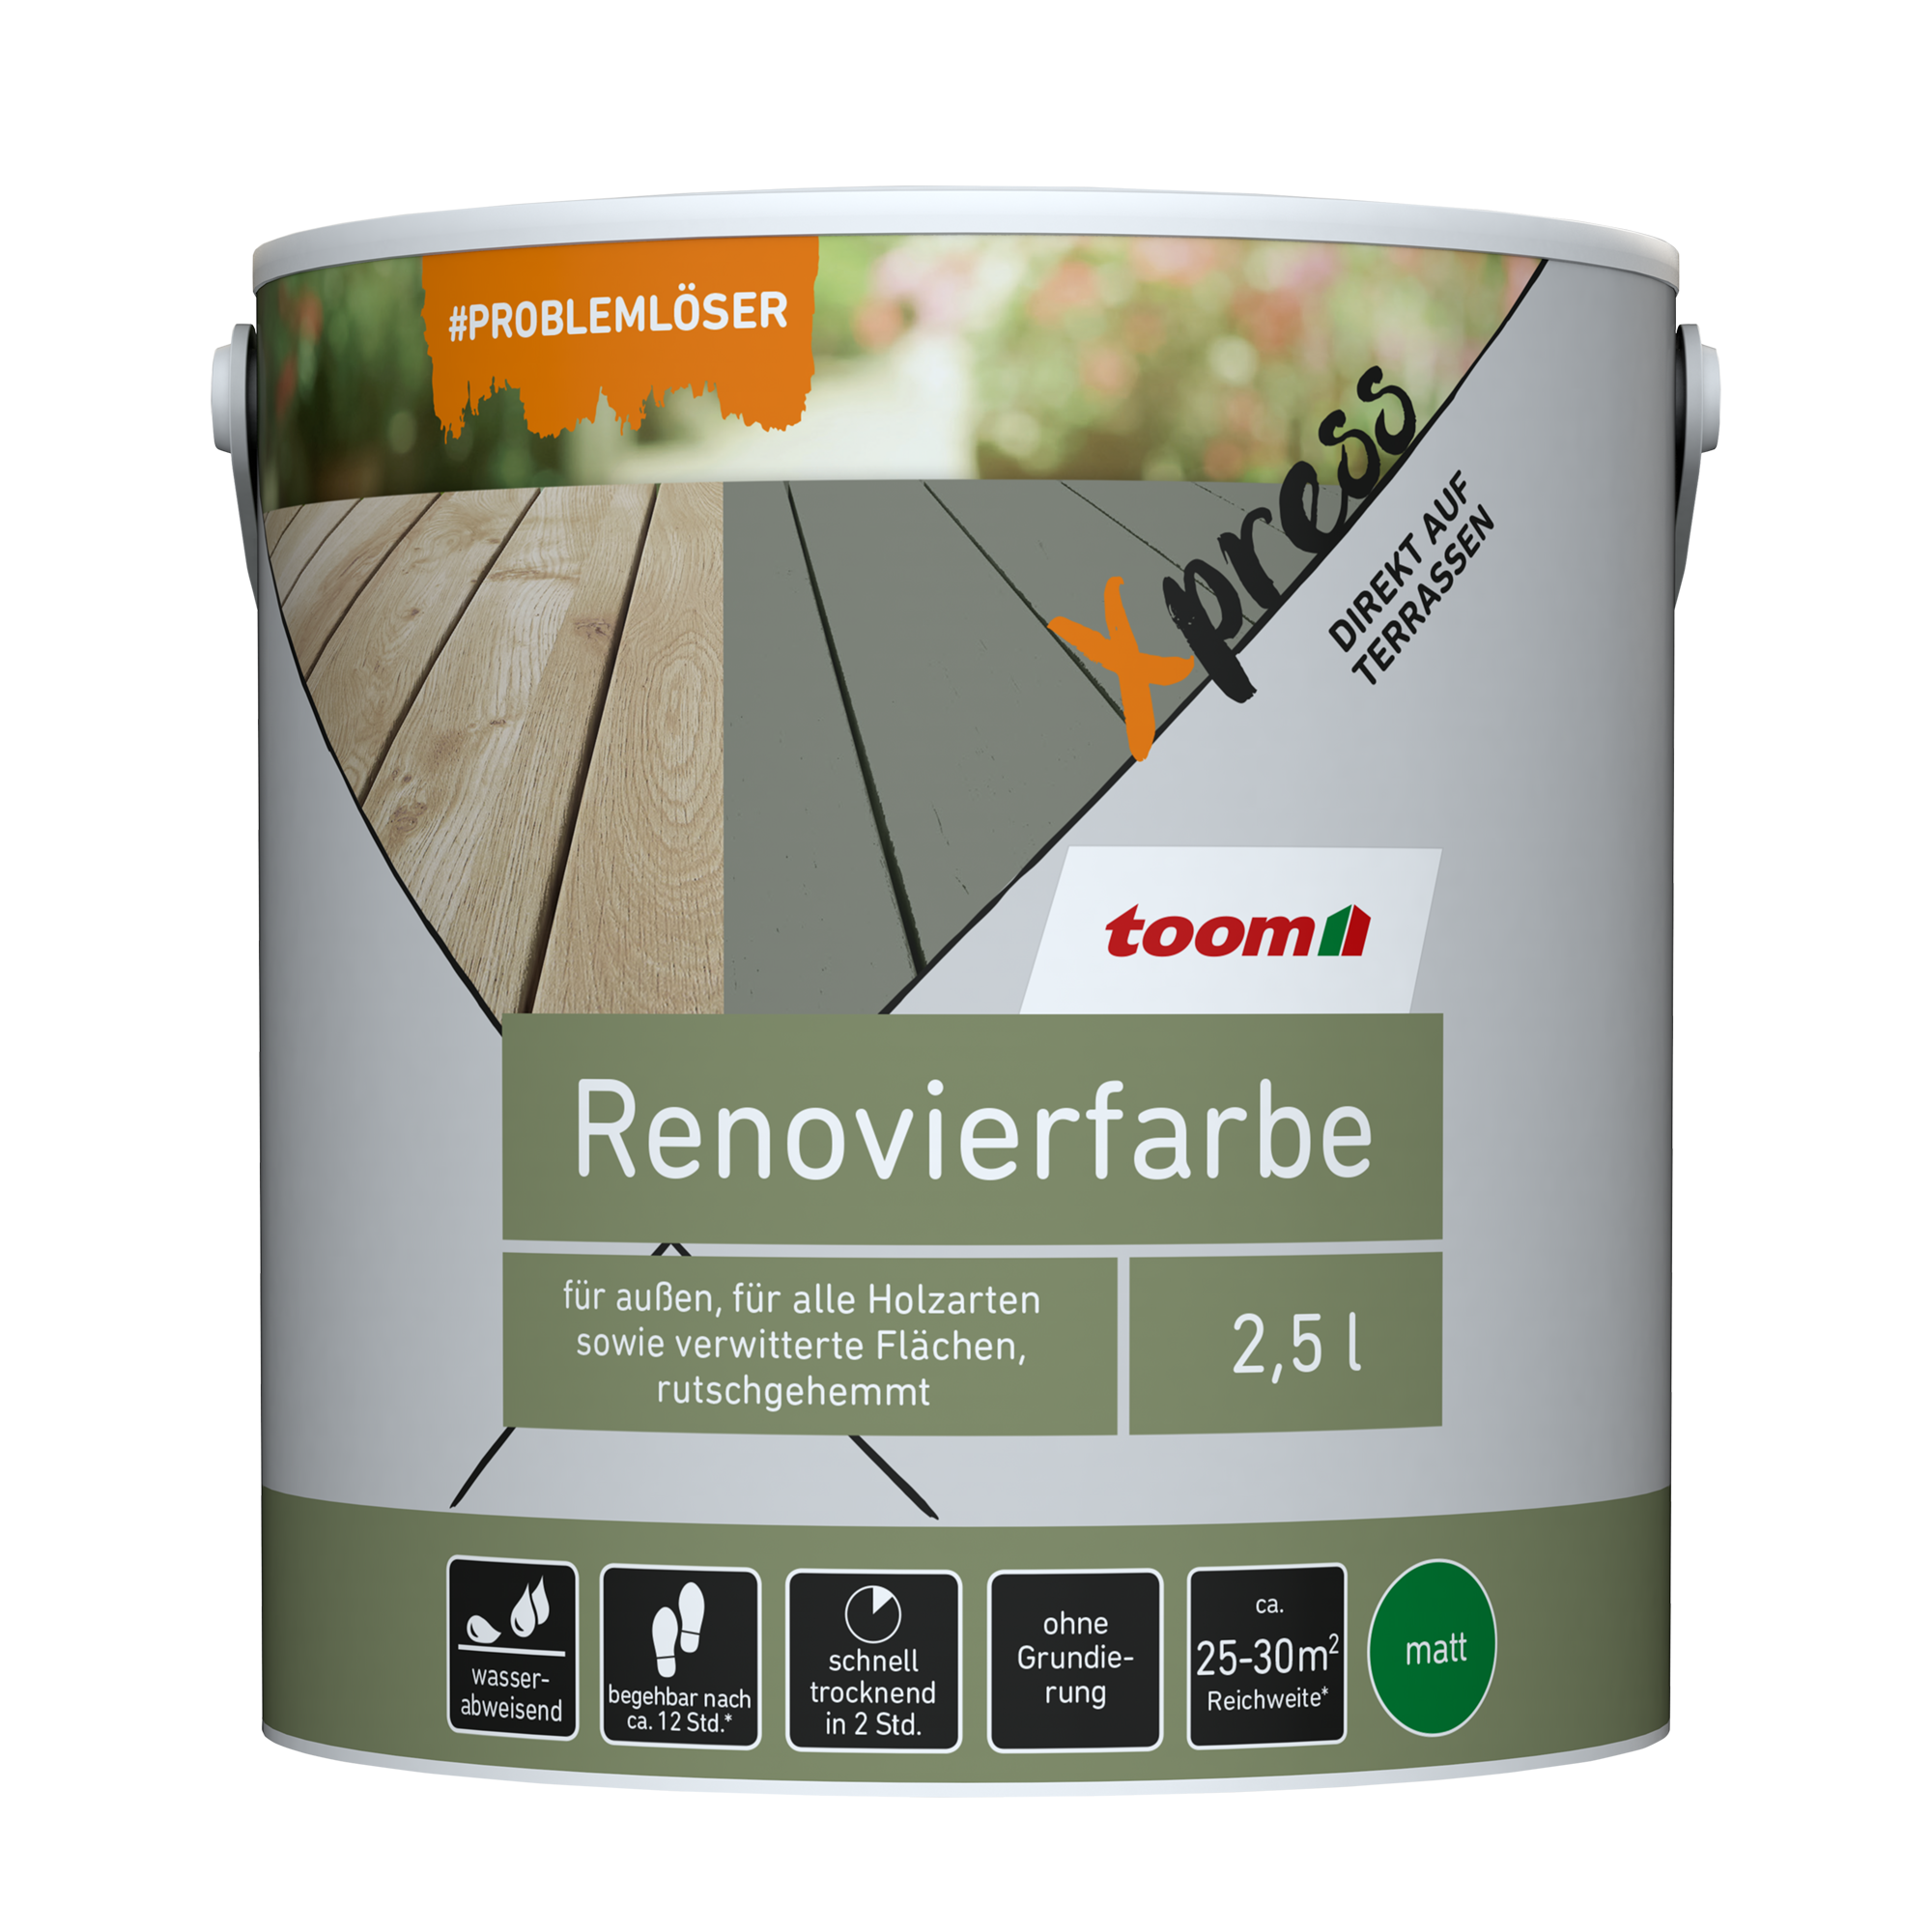 Renovierfarbe für Terrassen hellgrau matt 2,5 l + product picture